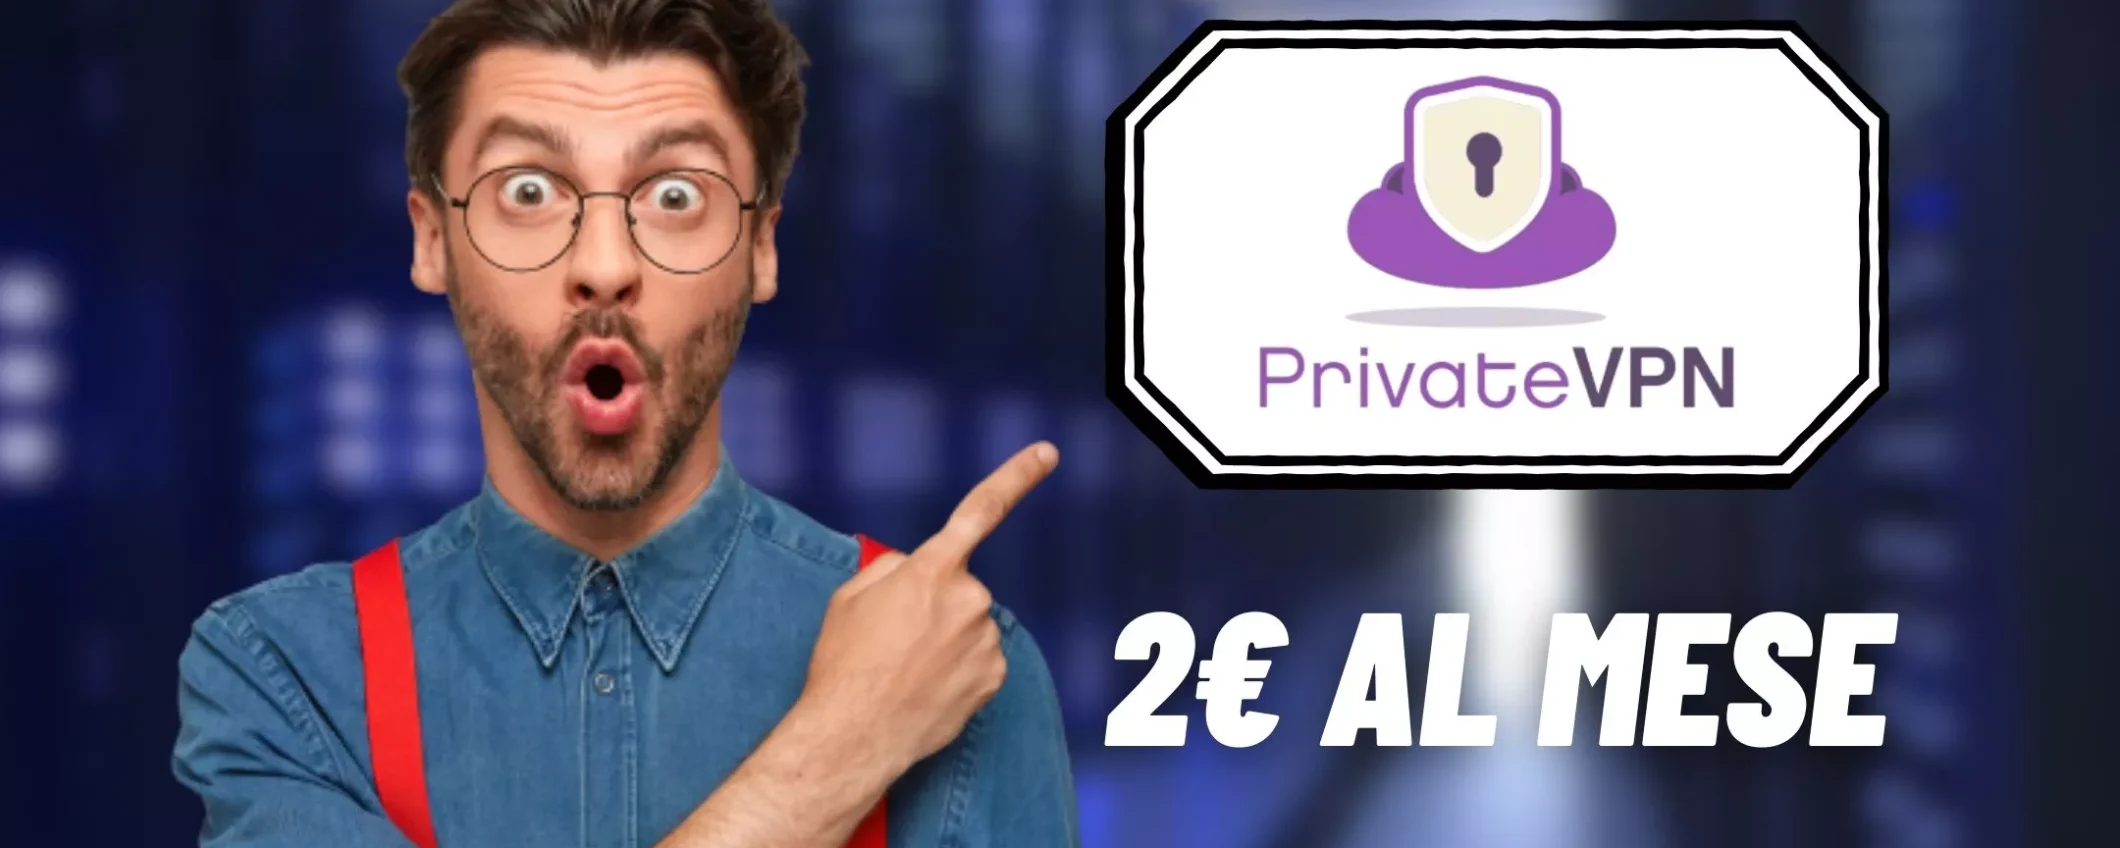 Privacy online garantita con PrivateVPN: VPN scontata dell’85%